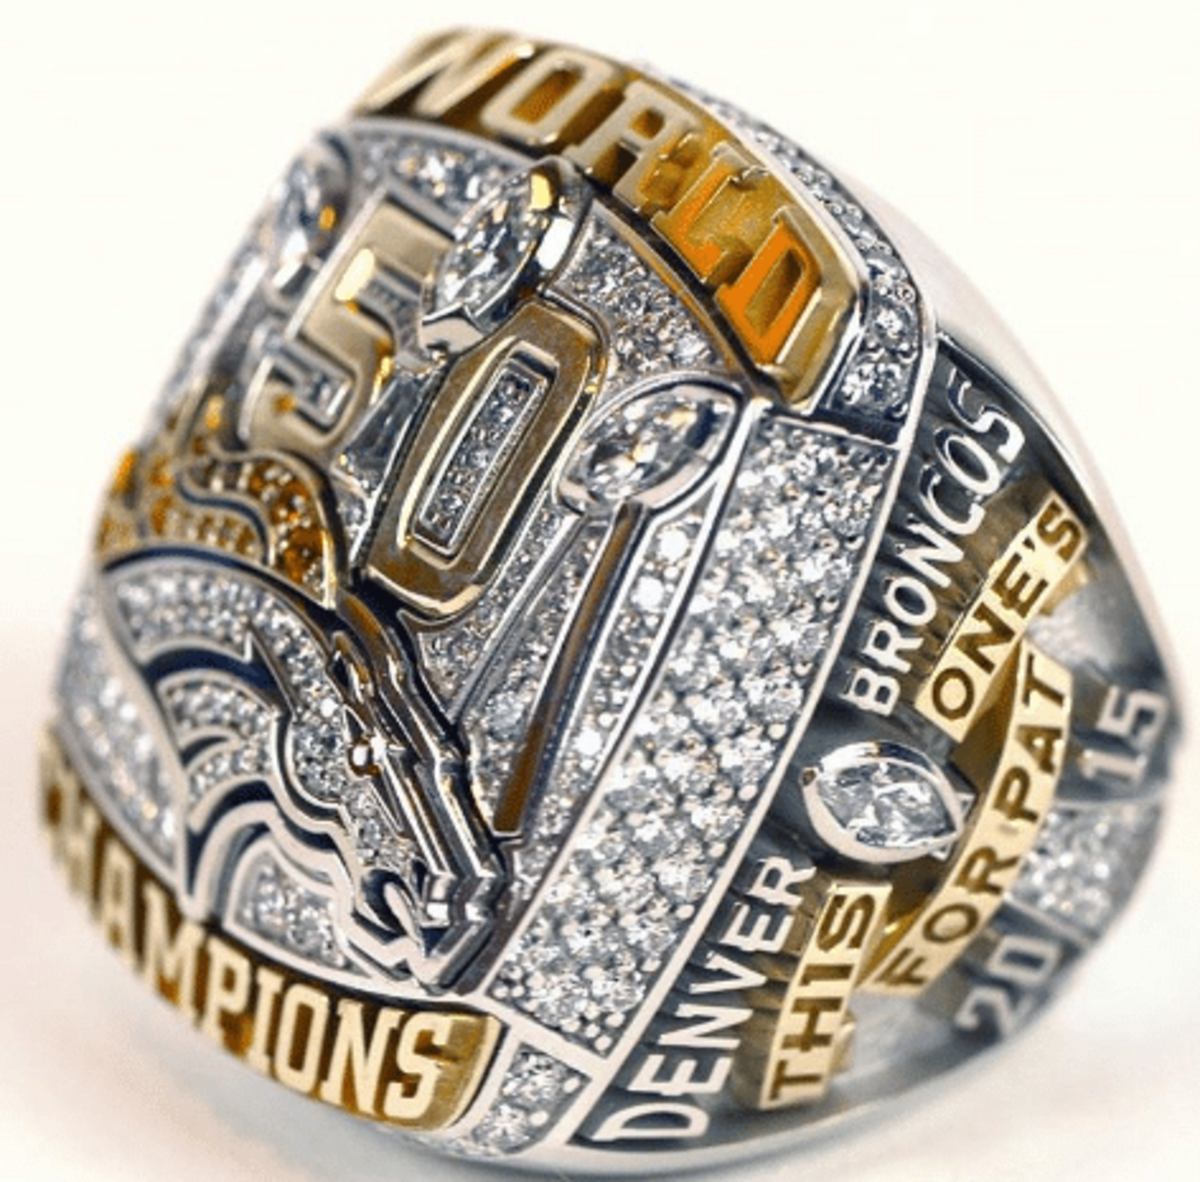 2015 Denver Broncos Super Bowl Ring